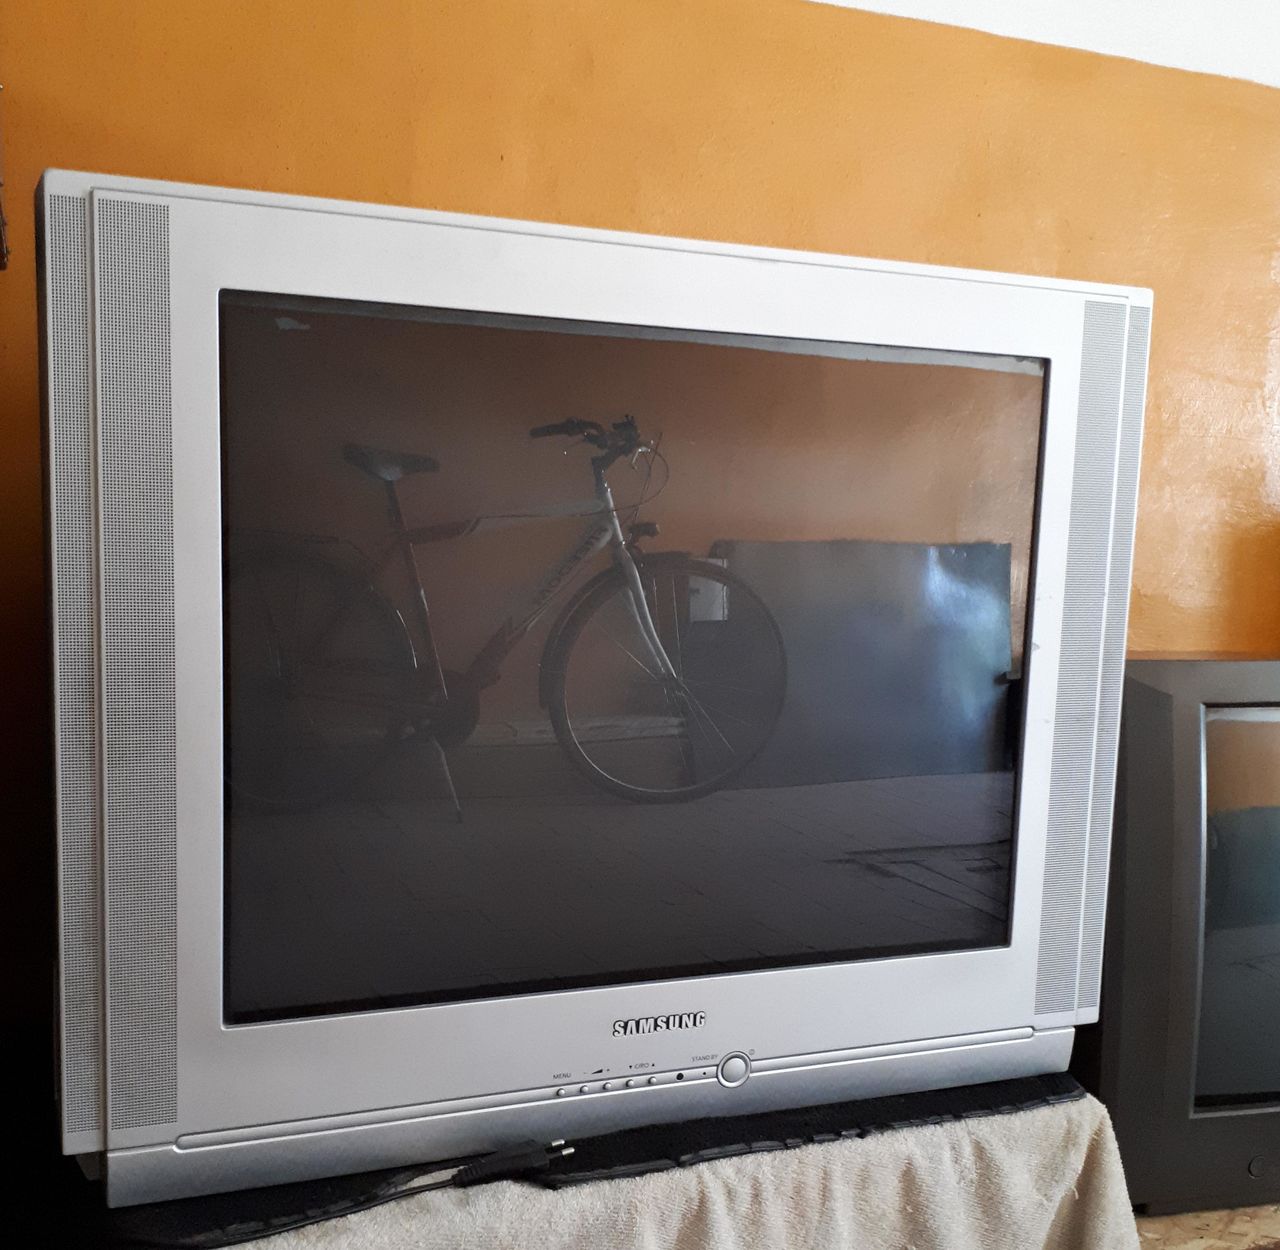 Телевизор обычный куплю. Телевизор самсунг 29 дюймов. Телевизор Samsung 2000 года. Ламповый телевизор Samsung 29 дюймов. Телевизор Samsung model 1420.